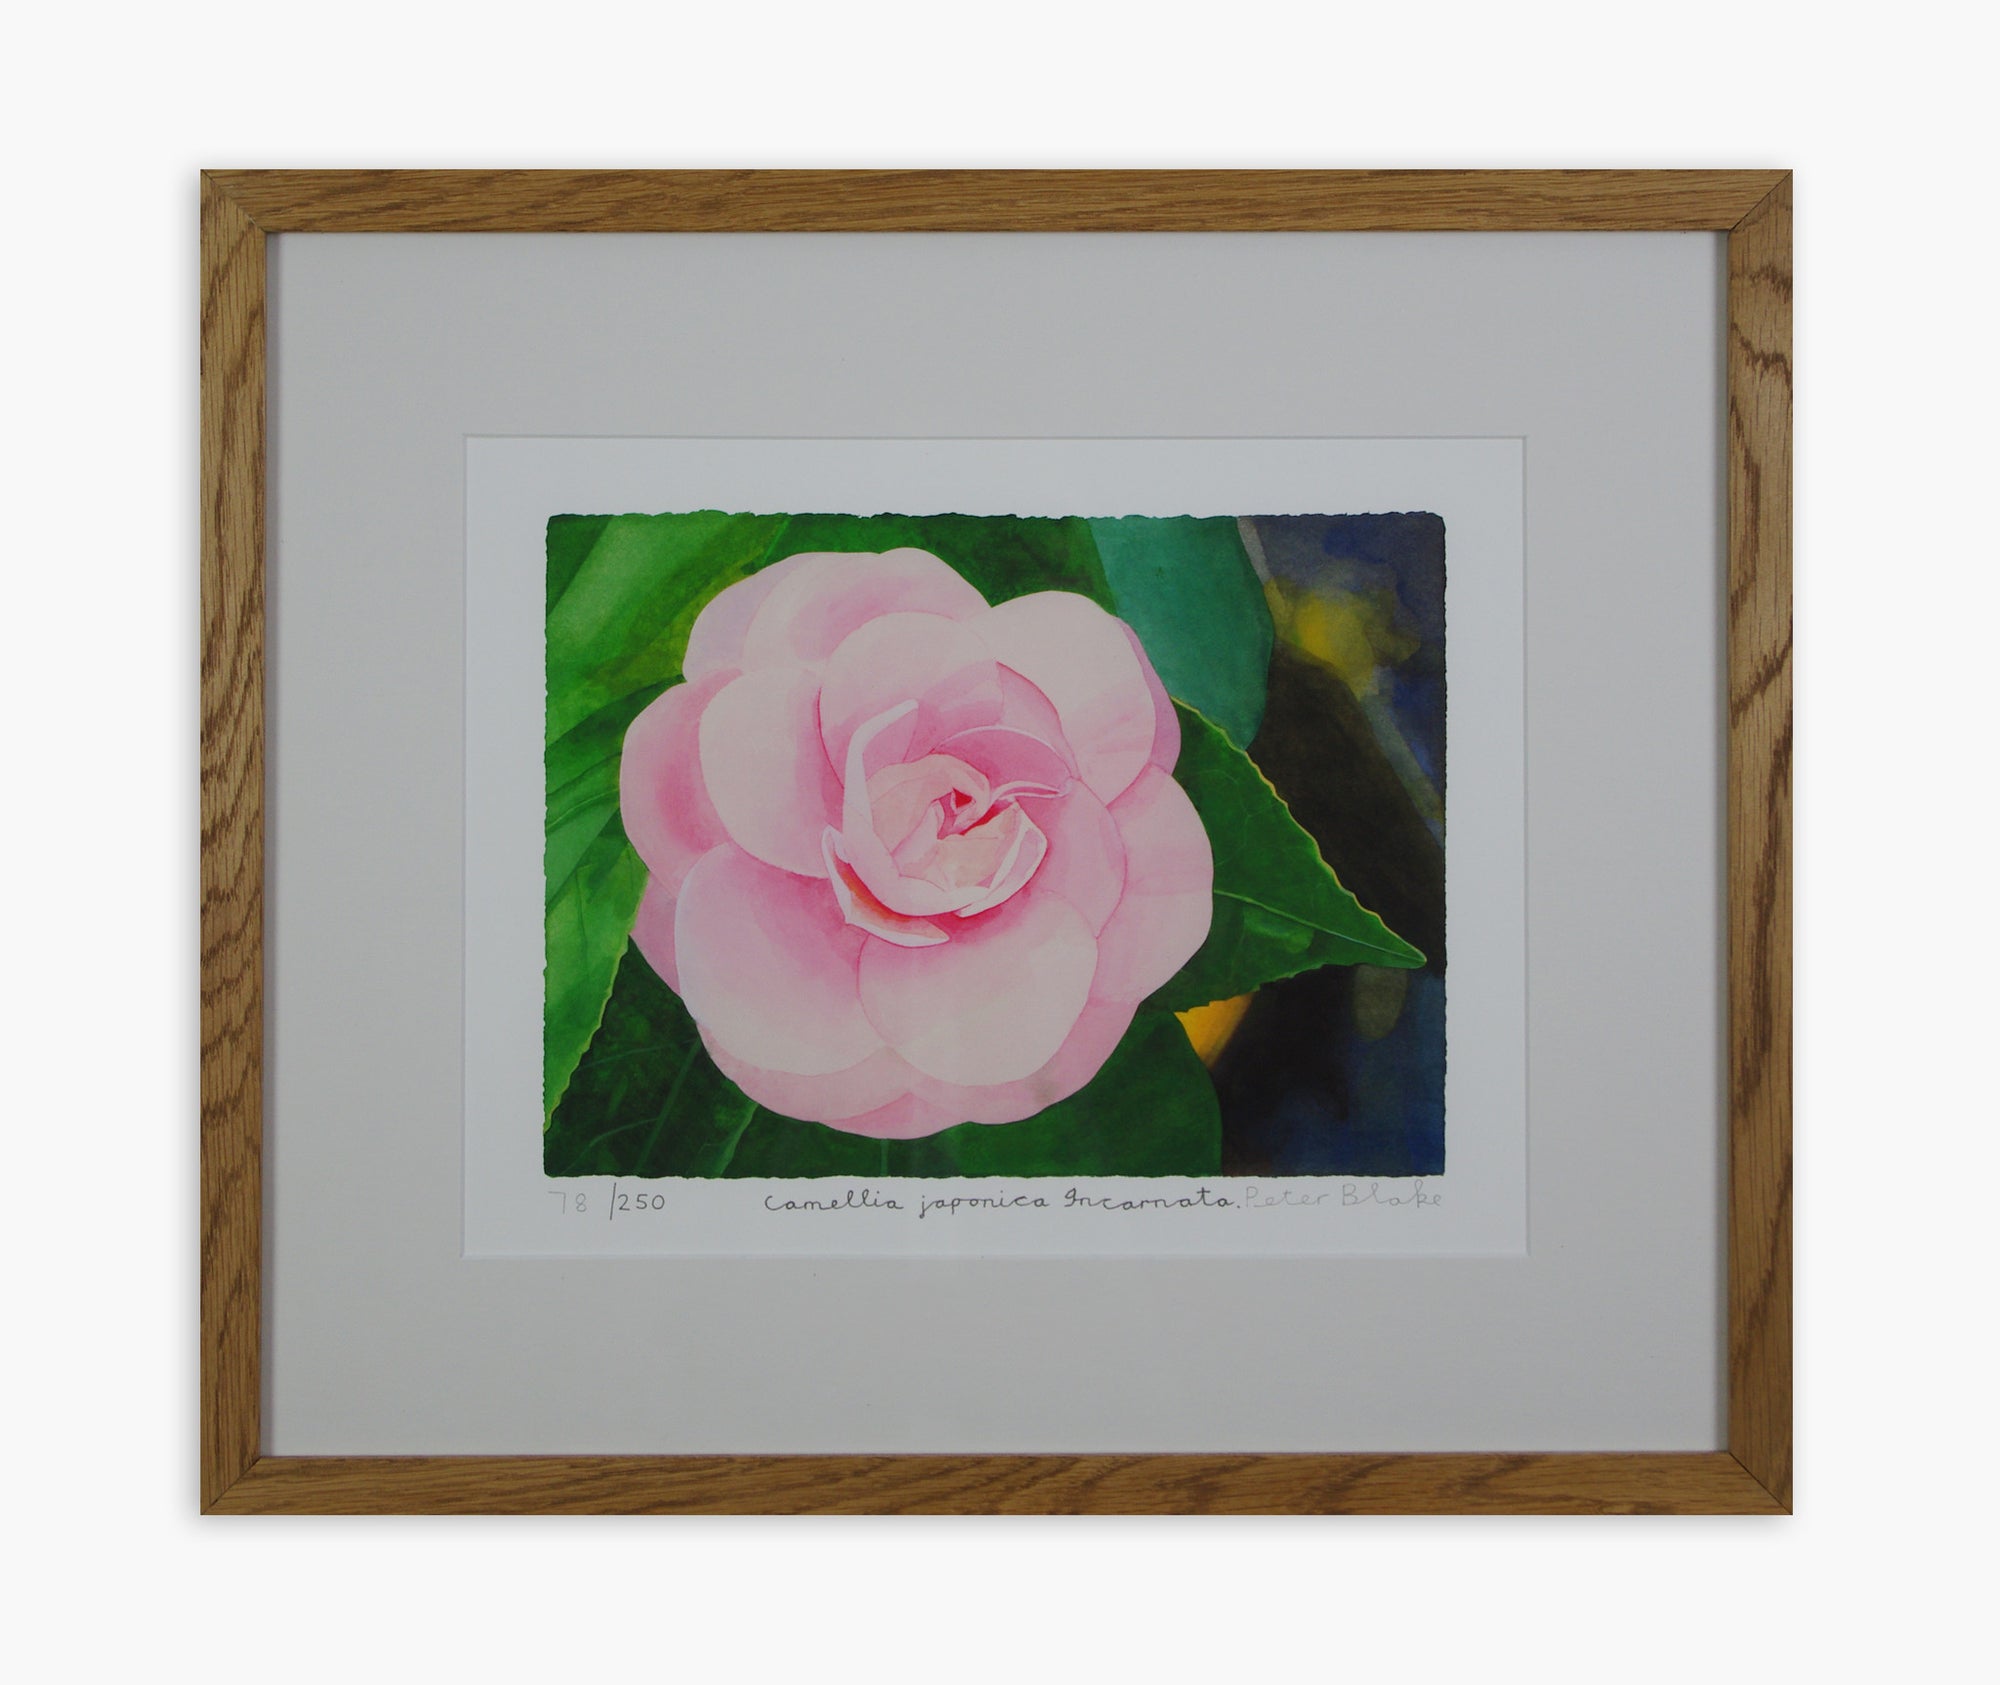 Peter Blake - Camellia Japonica 'Incarnata' (Framed)